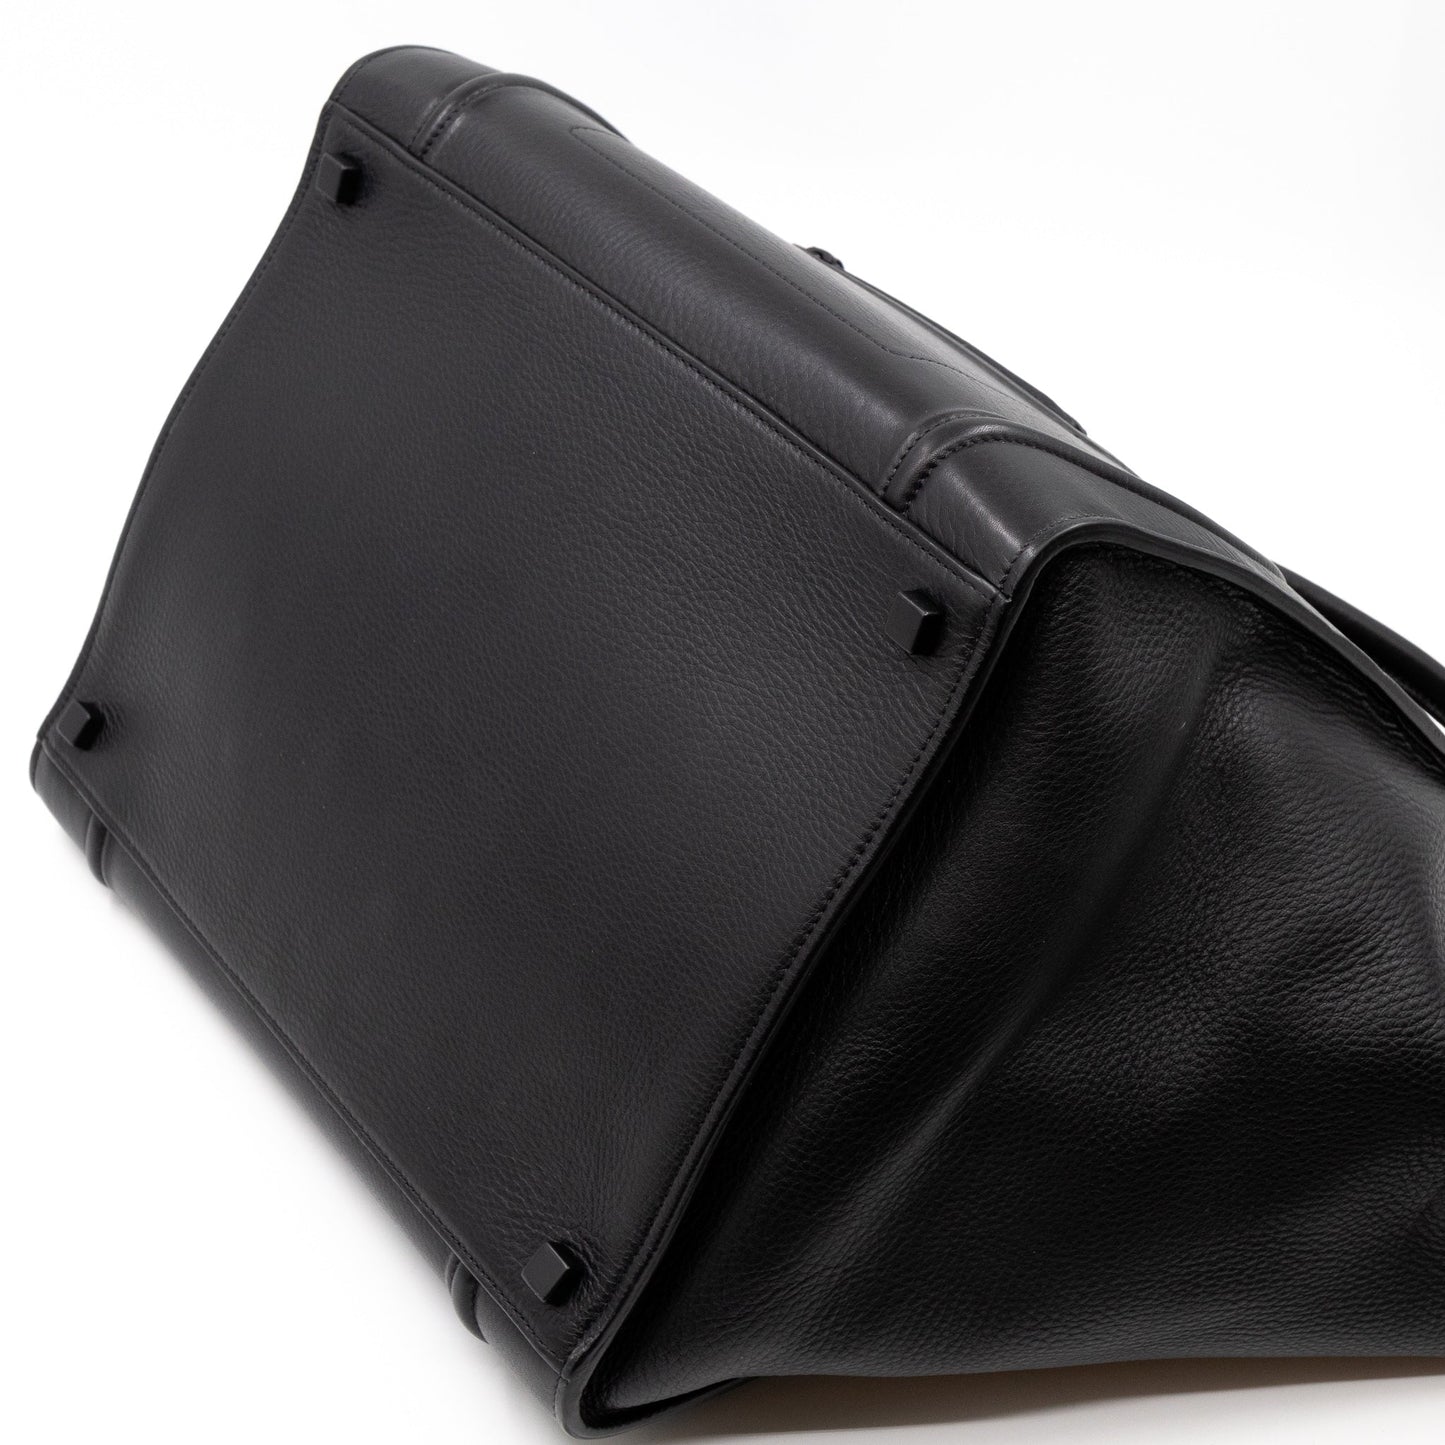 Phantom Medium Luggage Black Leather